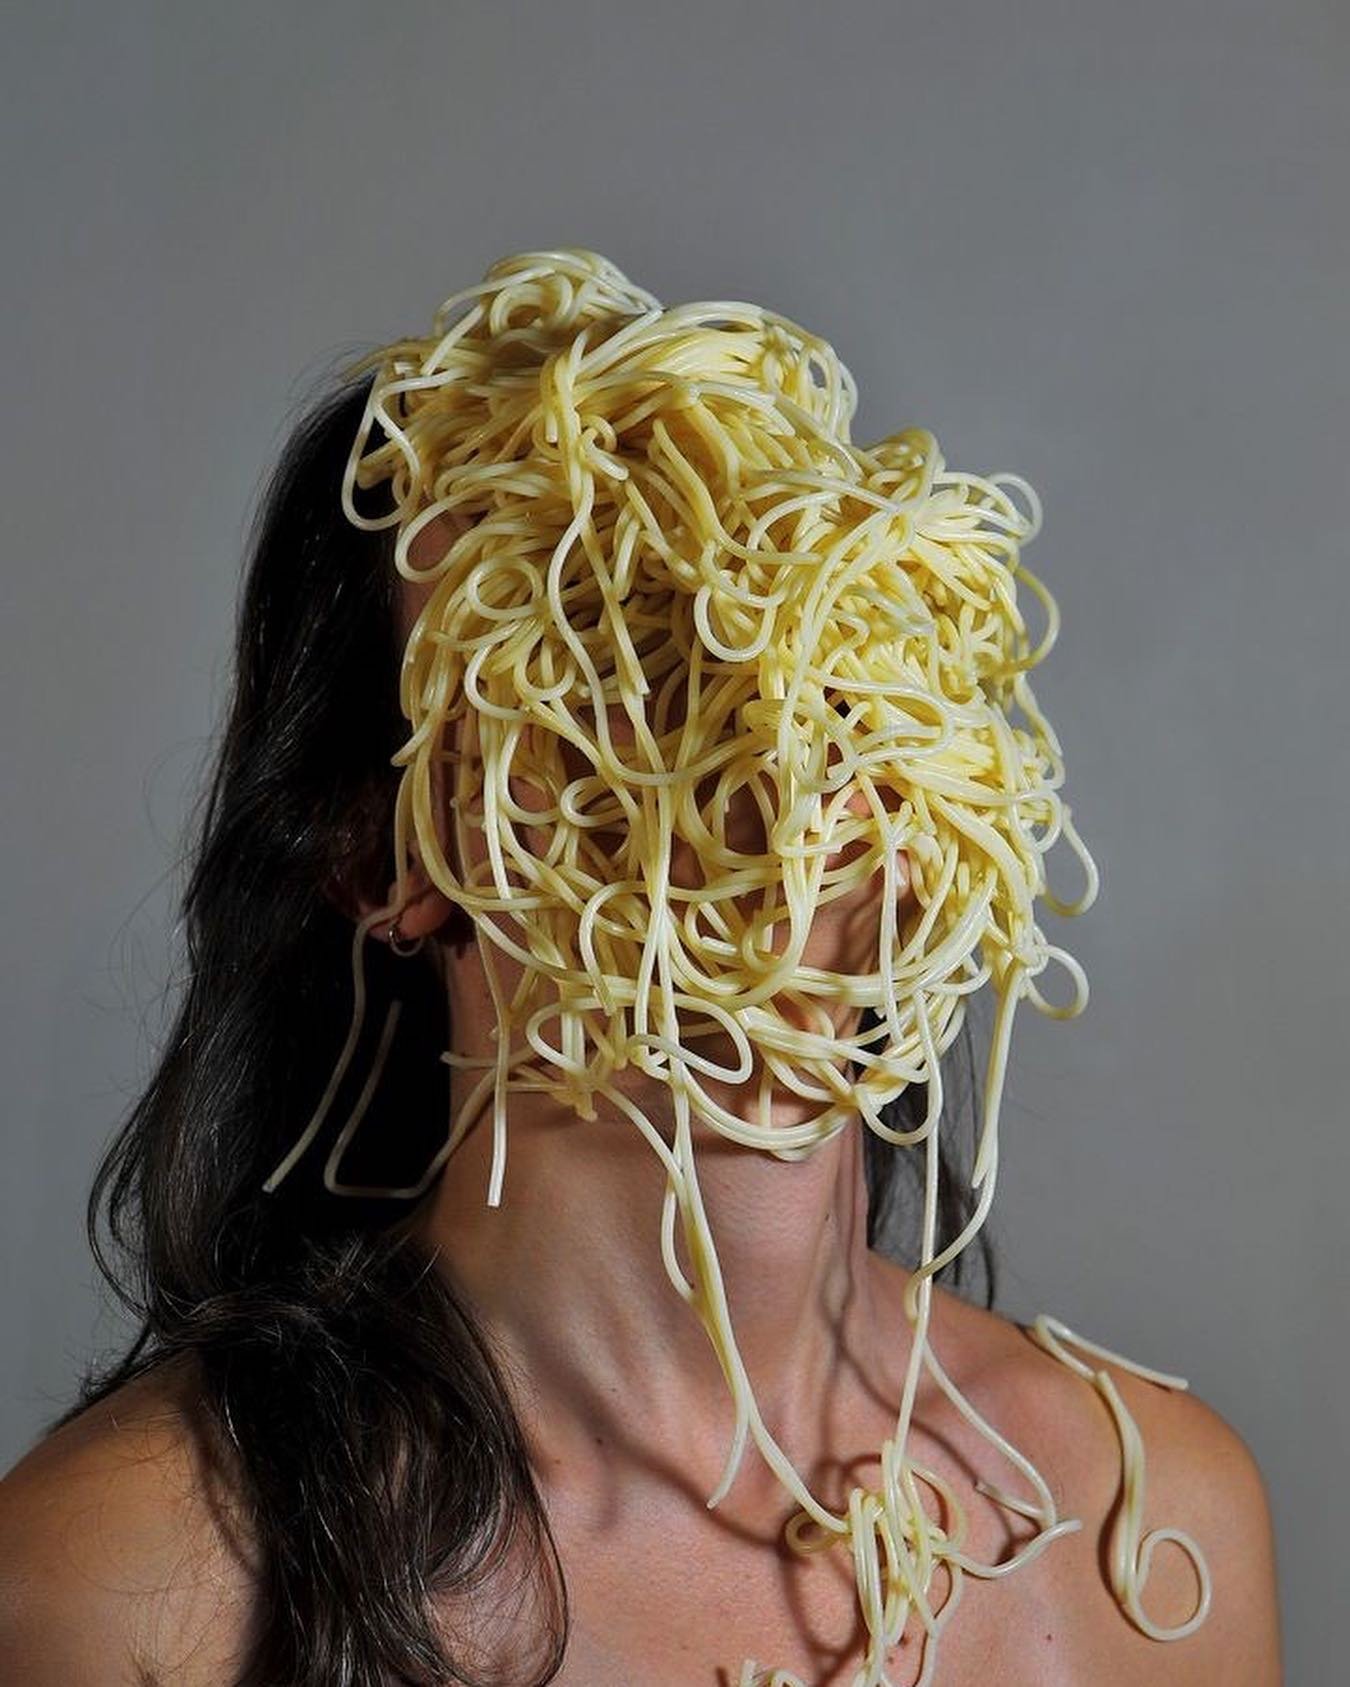 A slut for gluten 🍝

#pasta #glutenlife #foodporn #foodslut #moodboard